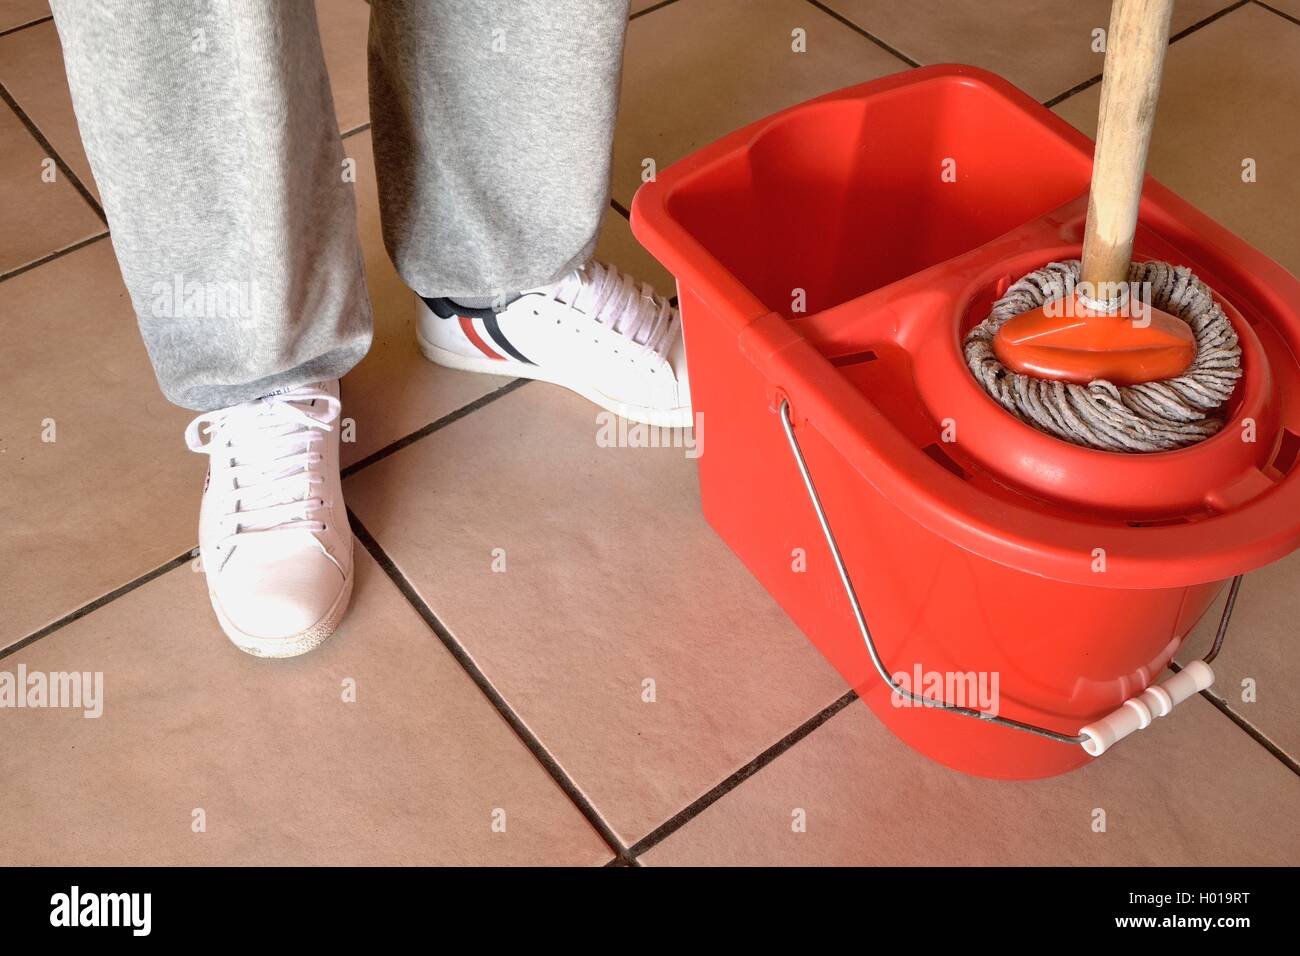 Dix Productos Limpieza - ▻▻▻Tips para limpiar el piso: ▻Empezá por pasar la  aspiradora o barrer el piso. Si hay restos de comida o suciedad en el piso,  pasar el trapo o